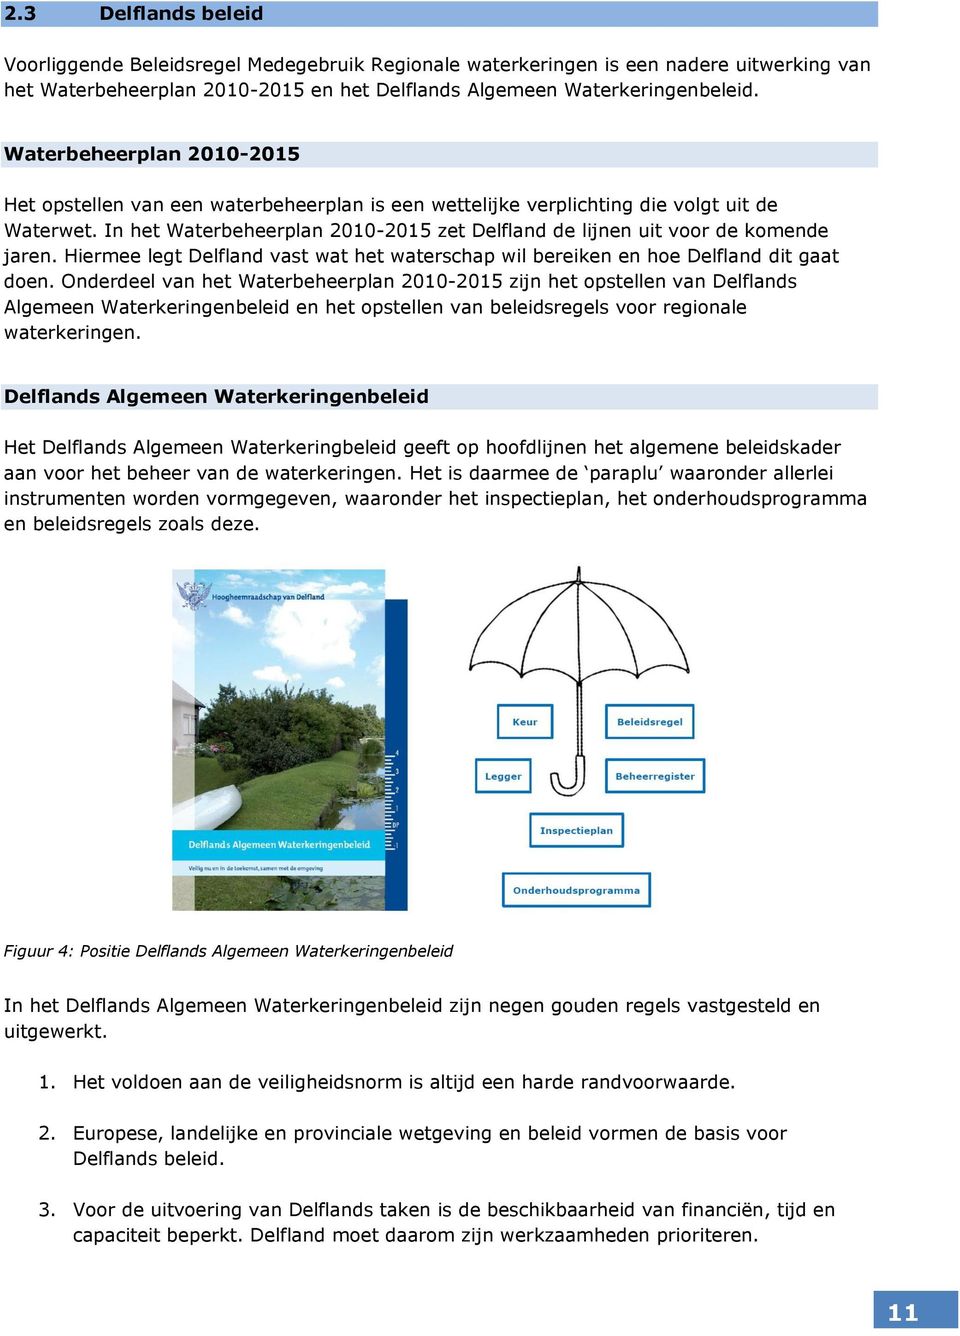 In het Waterbeheerplan 2010-2015 zet Delfland de lijnen uit voor de komende jaren. Hiermee legt Delfland vast wat het waterschap wil bereiken en hoe Delfland dit gaat doen.